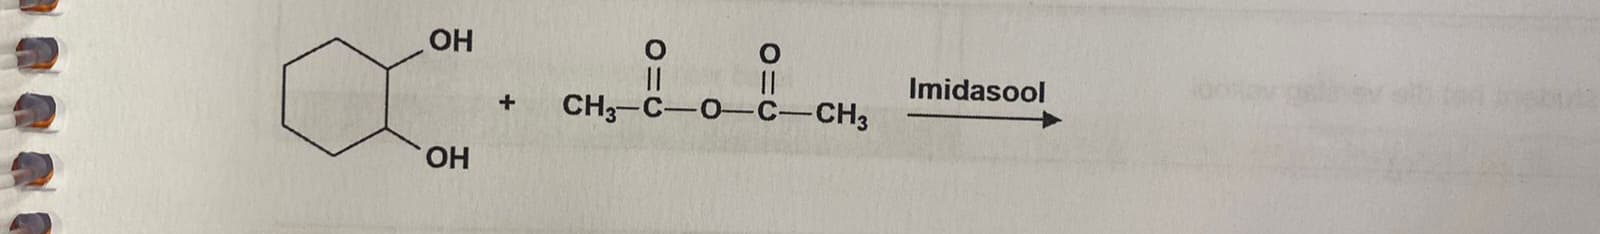 OH
OH
01C
O
01C
+ CH3-C-0-C-CH3
Imidasool